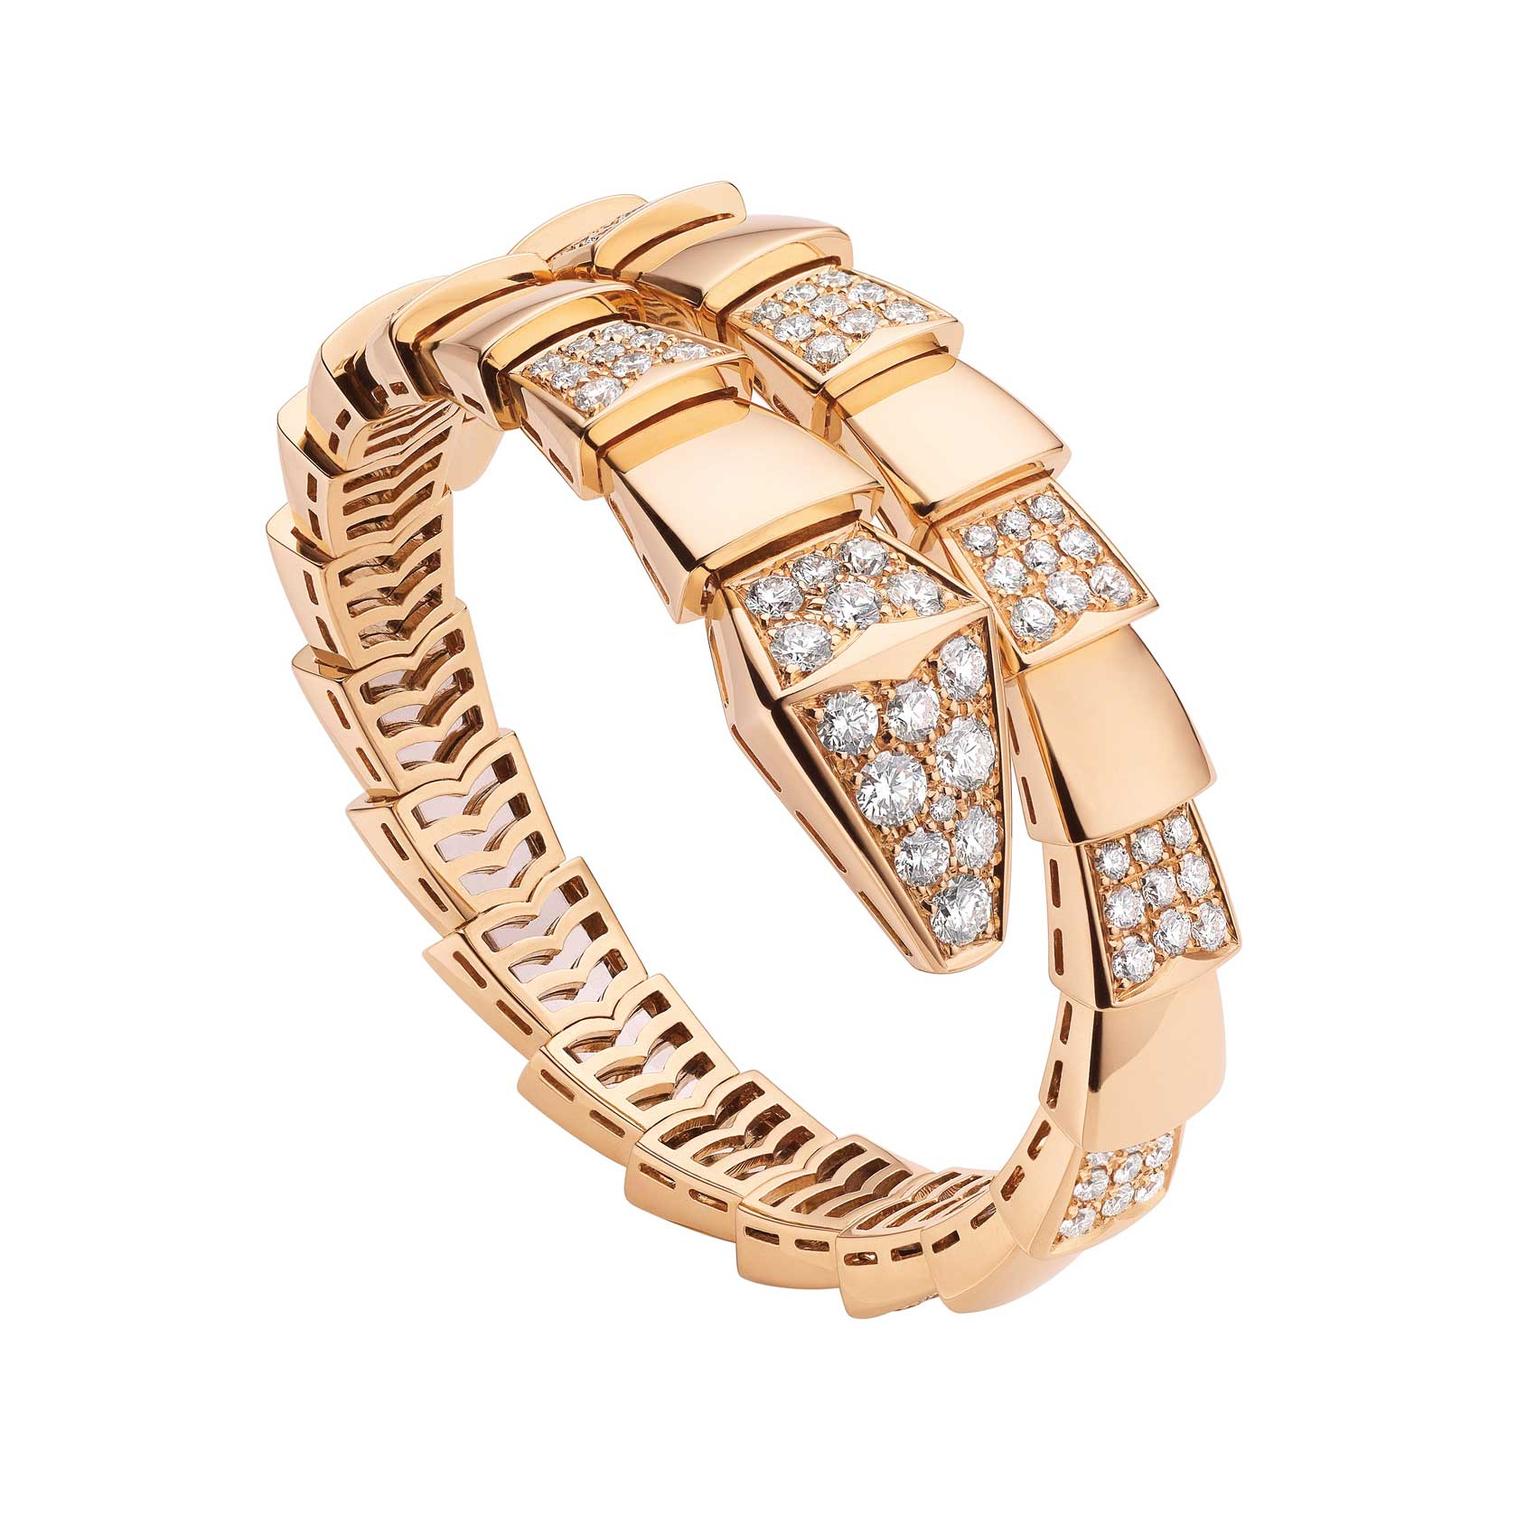 bulgari gold snake bracelet